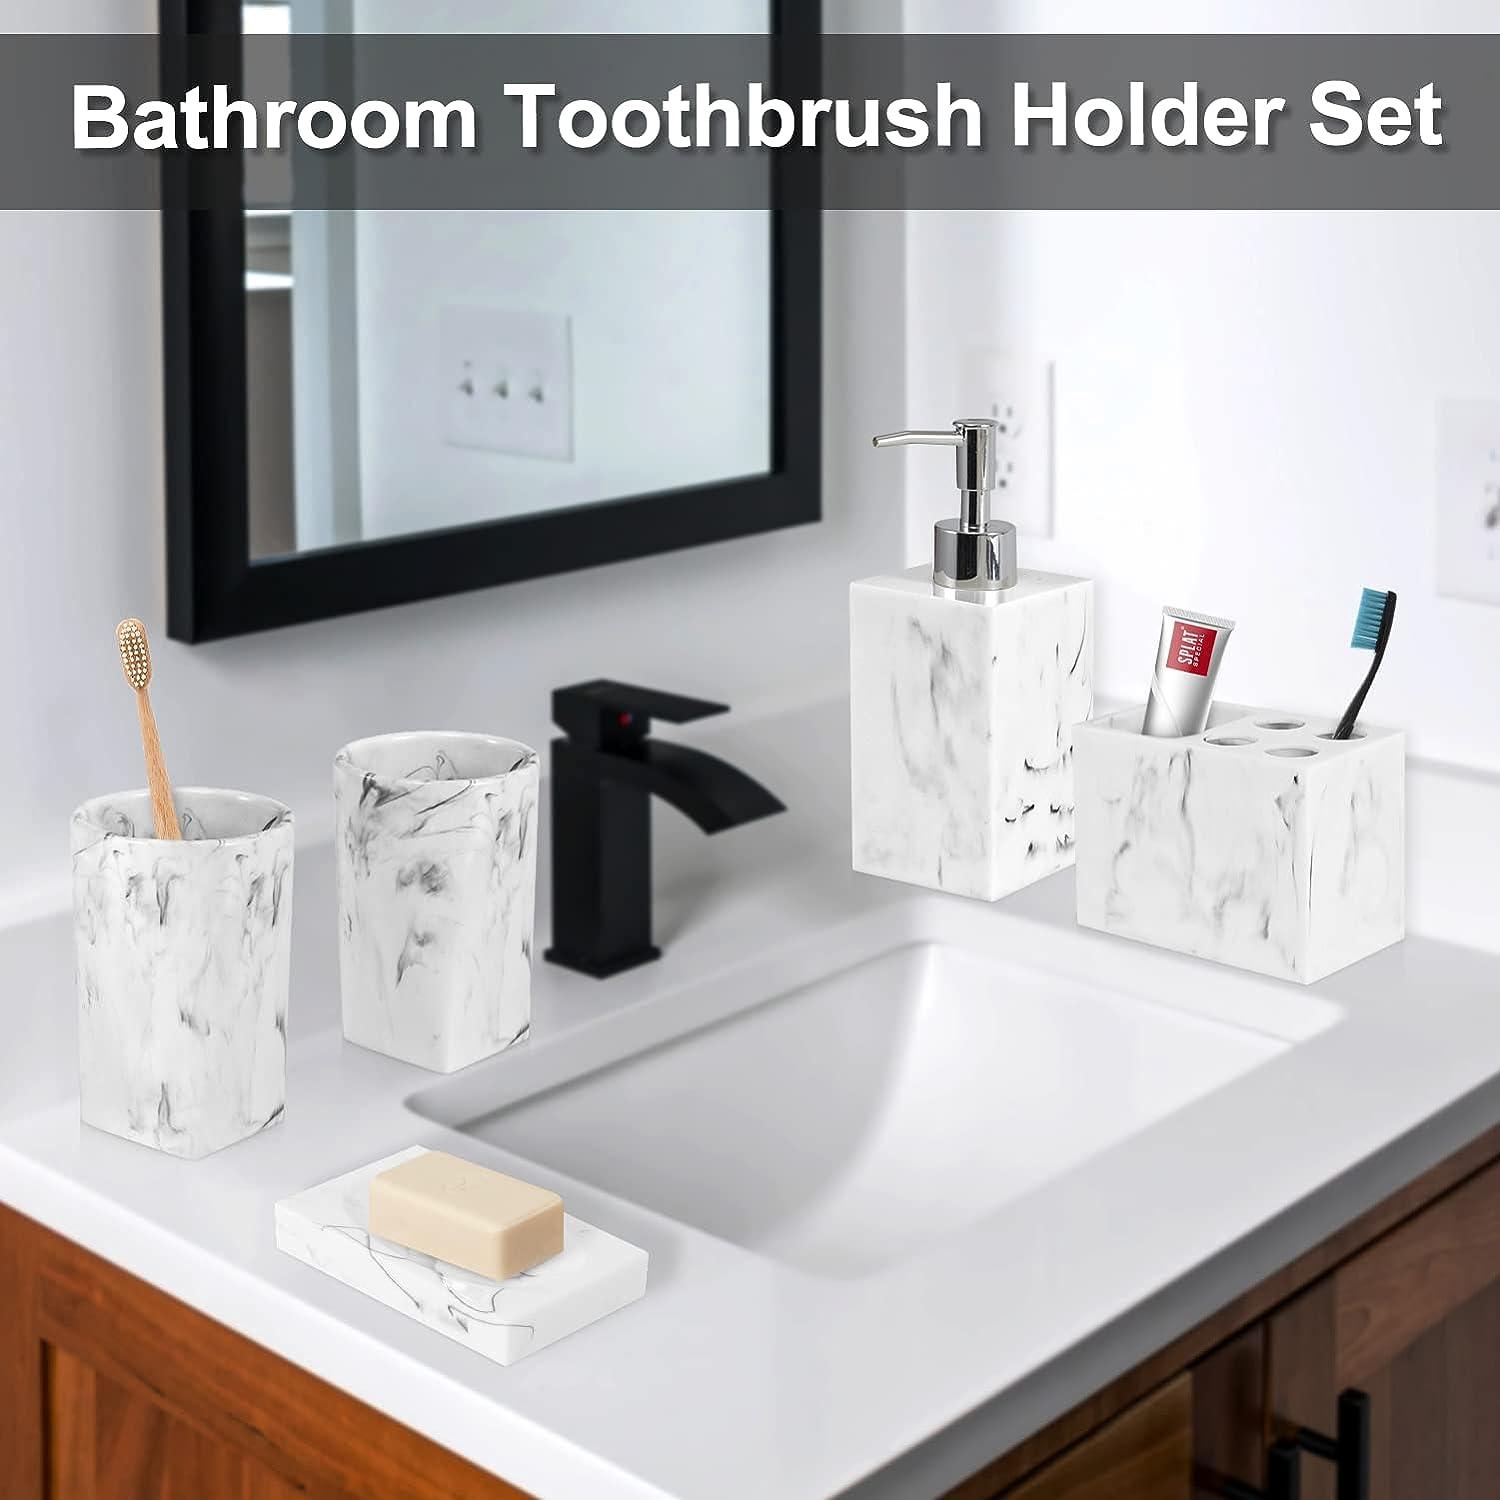 Juego de accesorios para baño, 5 piezas de resina para lavabo, soporte para  cepillos de dientes, dosificador de jabón líquido, jabonera, 2 vasos.